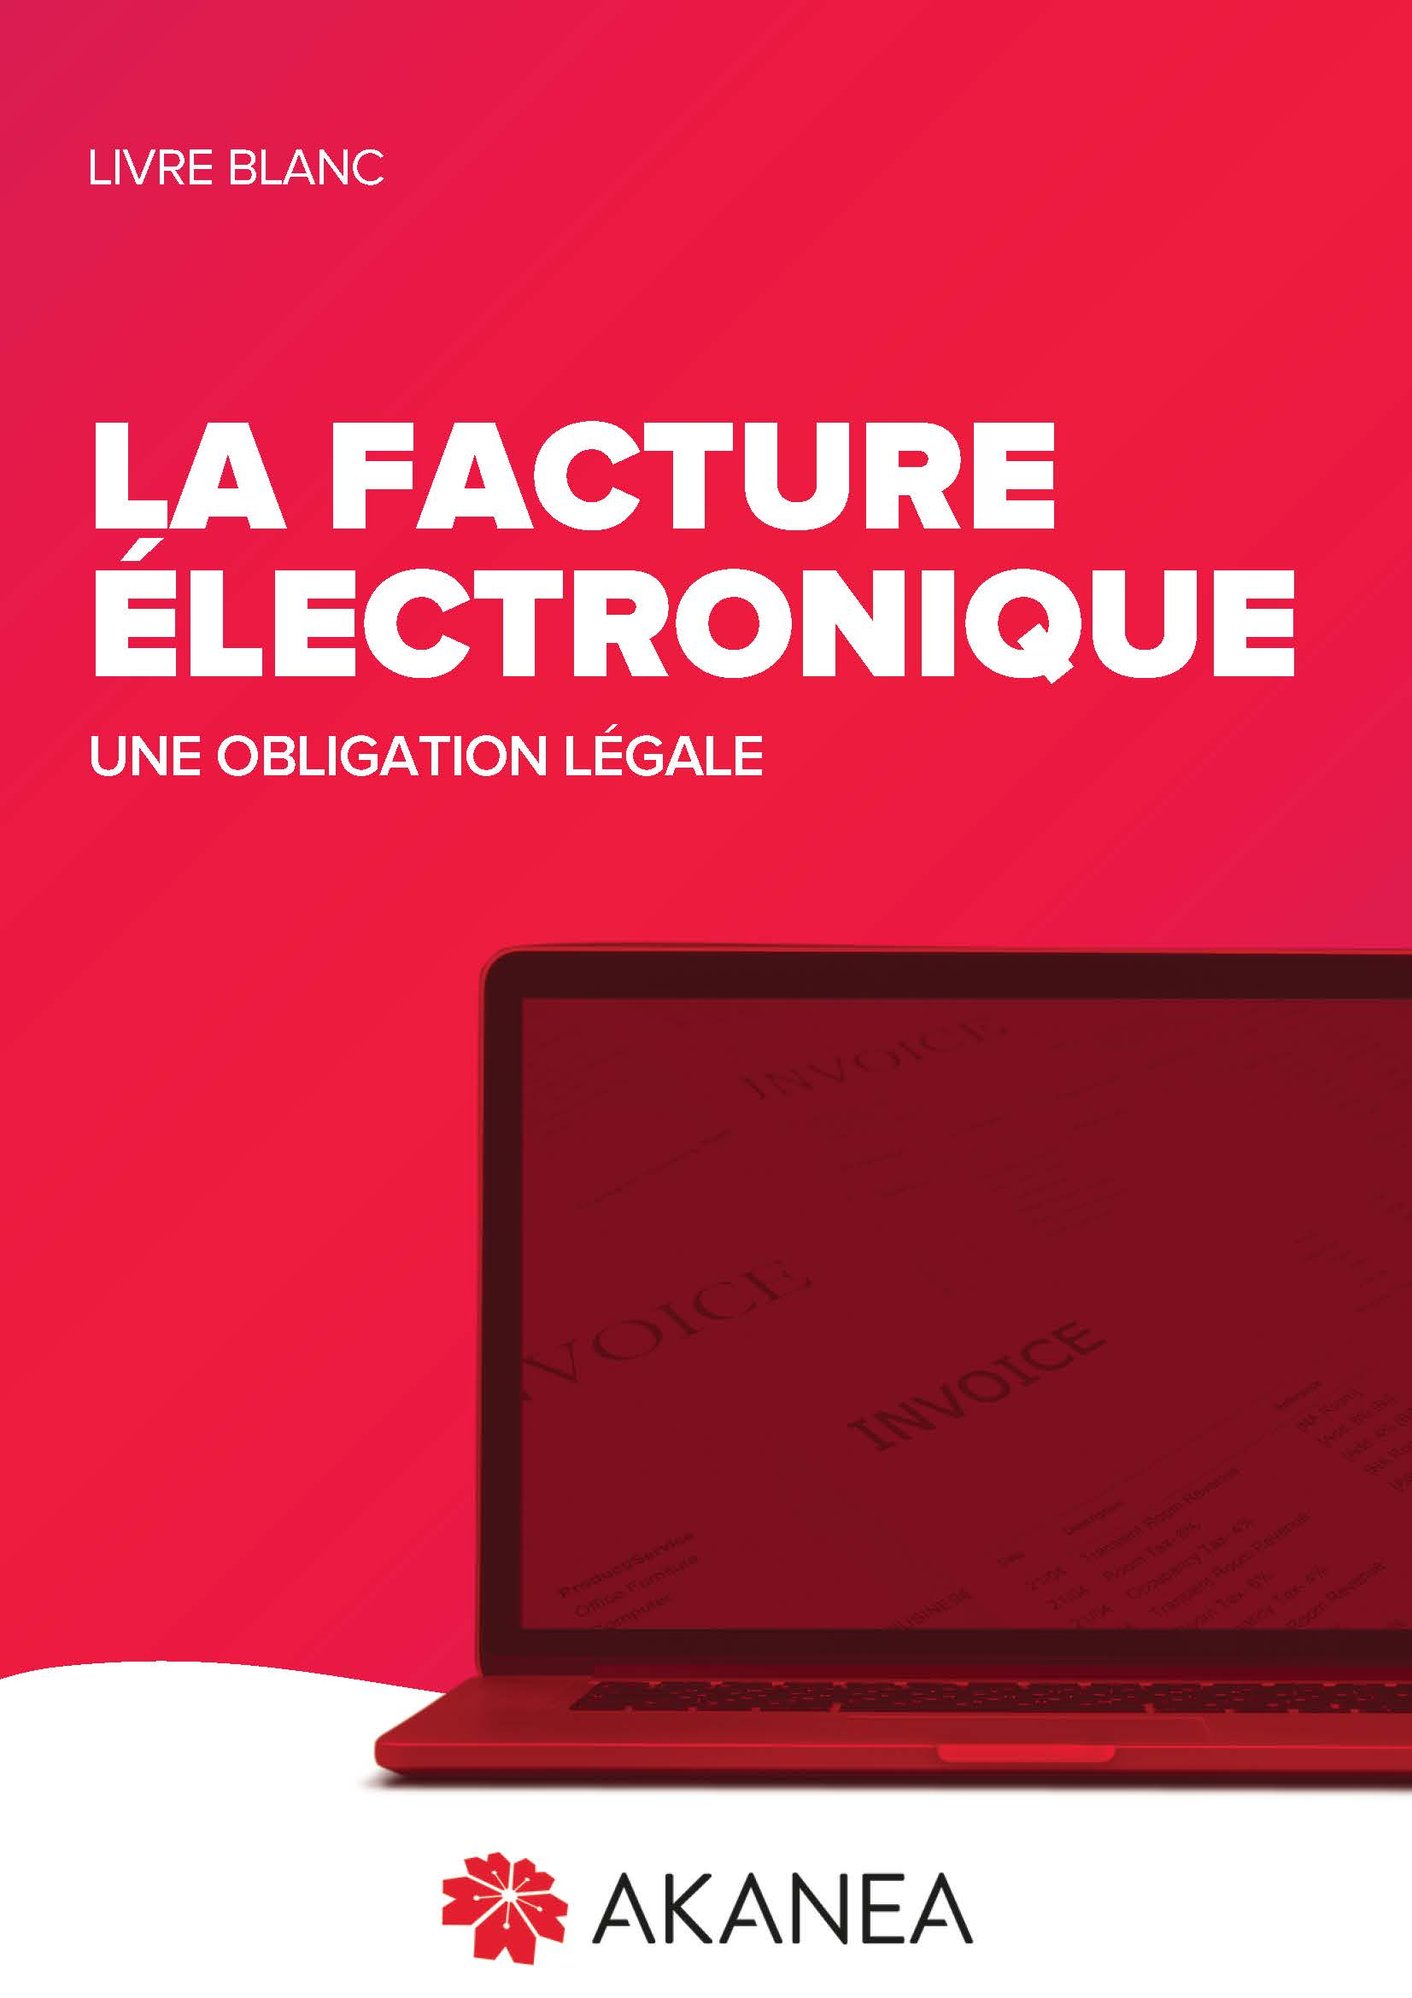 LB-report-facture-electronique